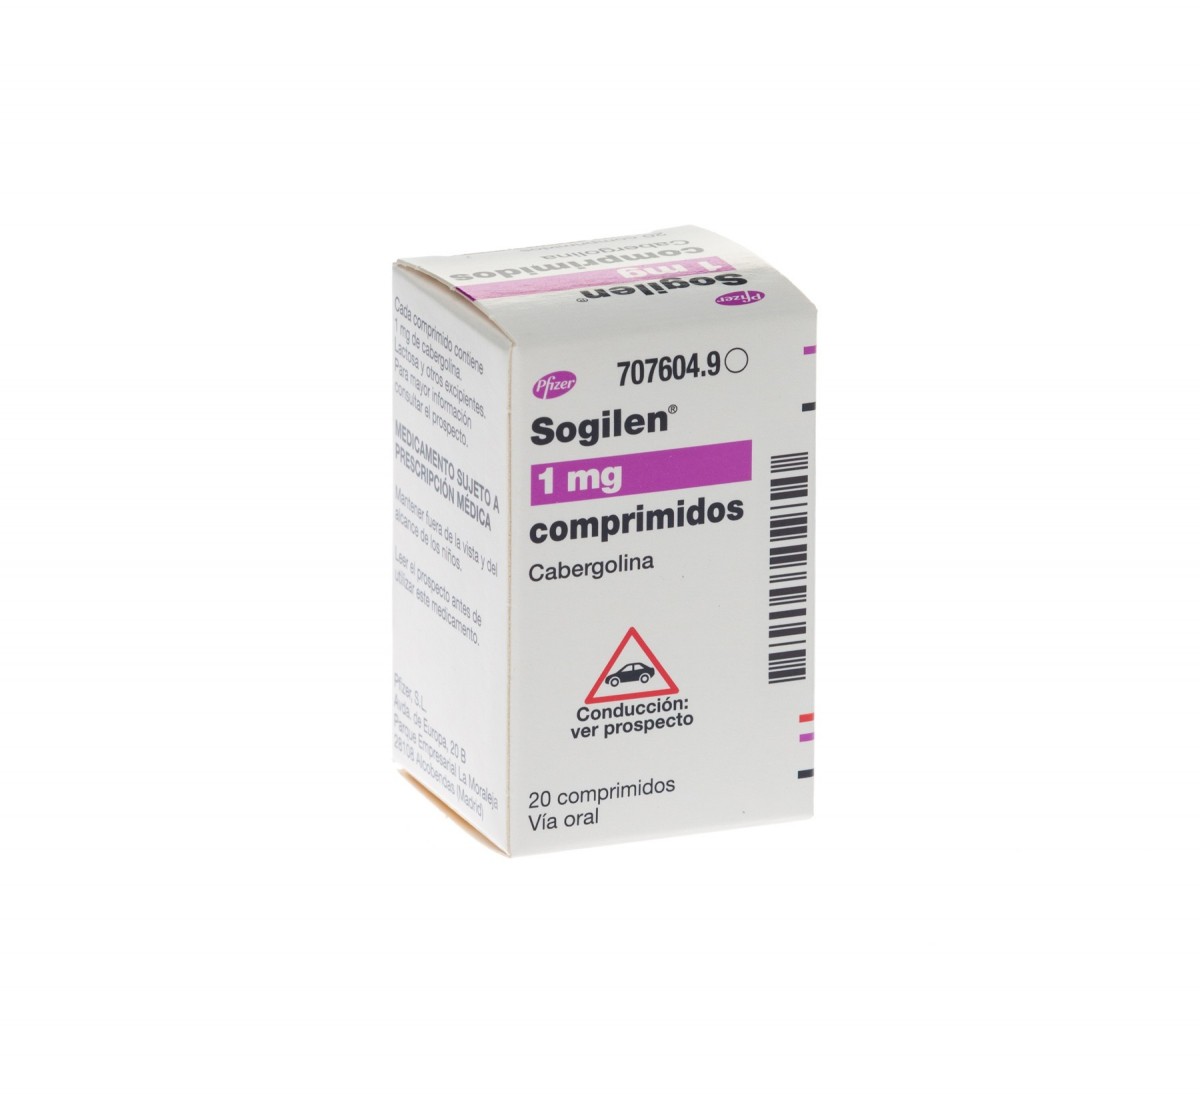 SOGILEN 1 mg COMPRIMIDOS , 20 comprimidos fotografía del envase.